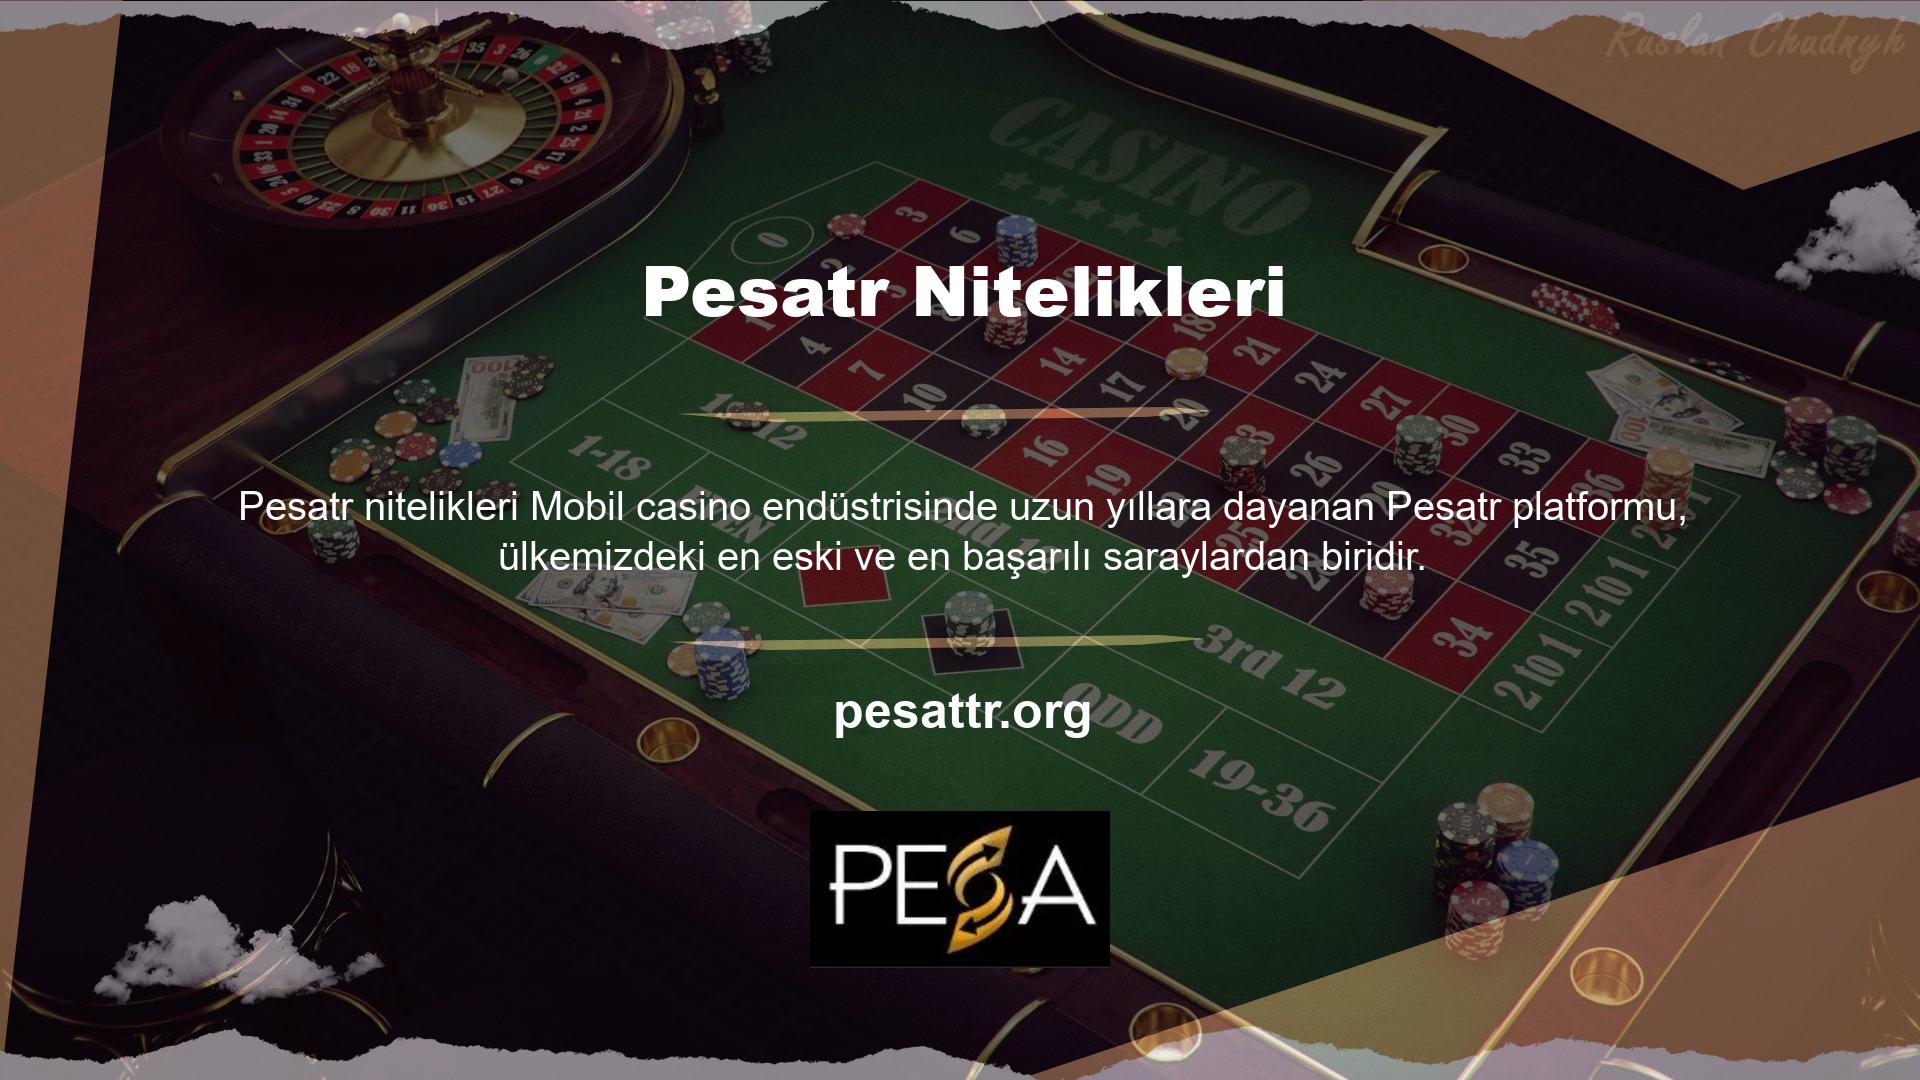 Giriş bahis sitesi Pesatr, kullanıcıların genel olarak memnun kaldığı birçok promosyon kampanyası ile çeşitli avantajlar sunan profesyonel bir siteye dönüşmüştür